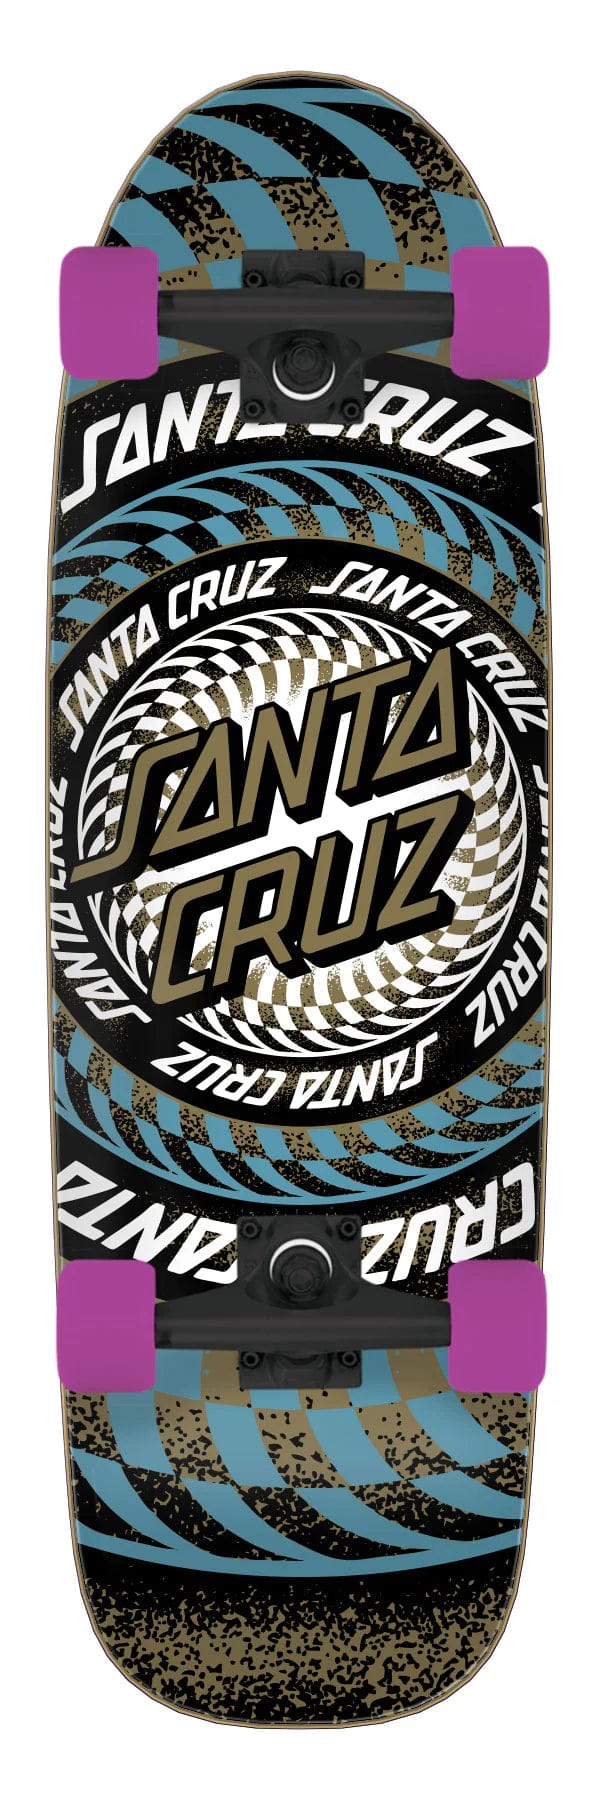 Infinite Ringed Street Cruzer Santa Cruz 8.79in x 29.05in